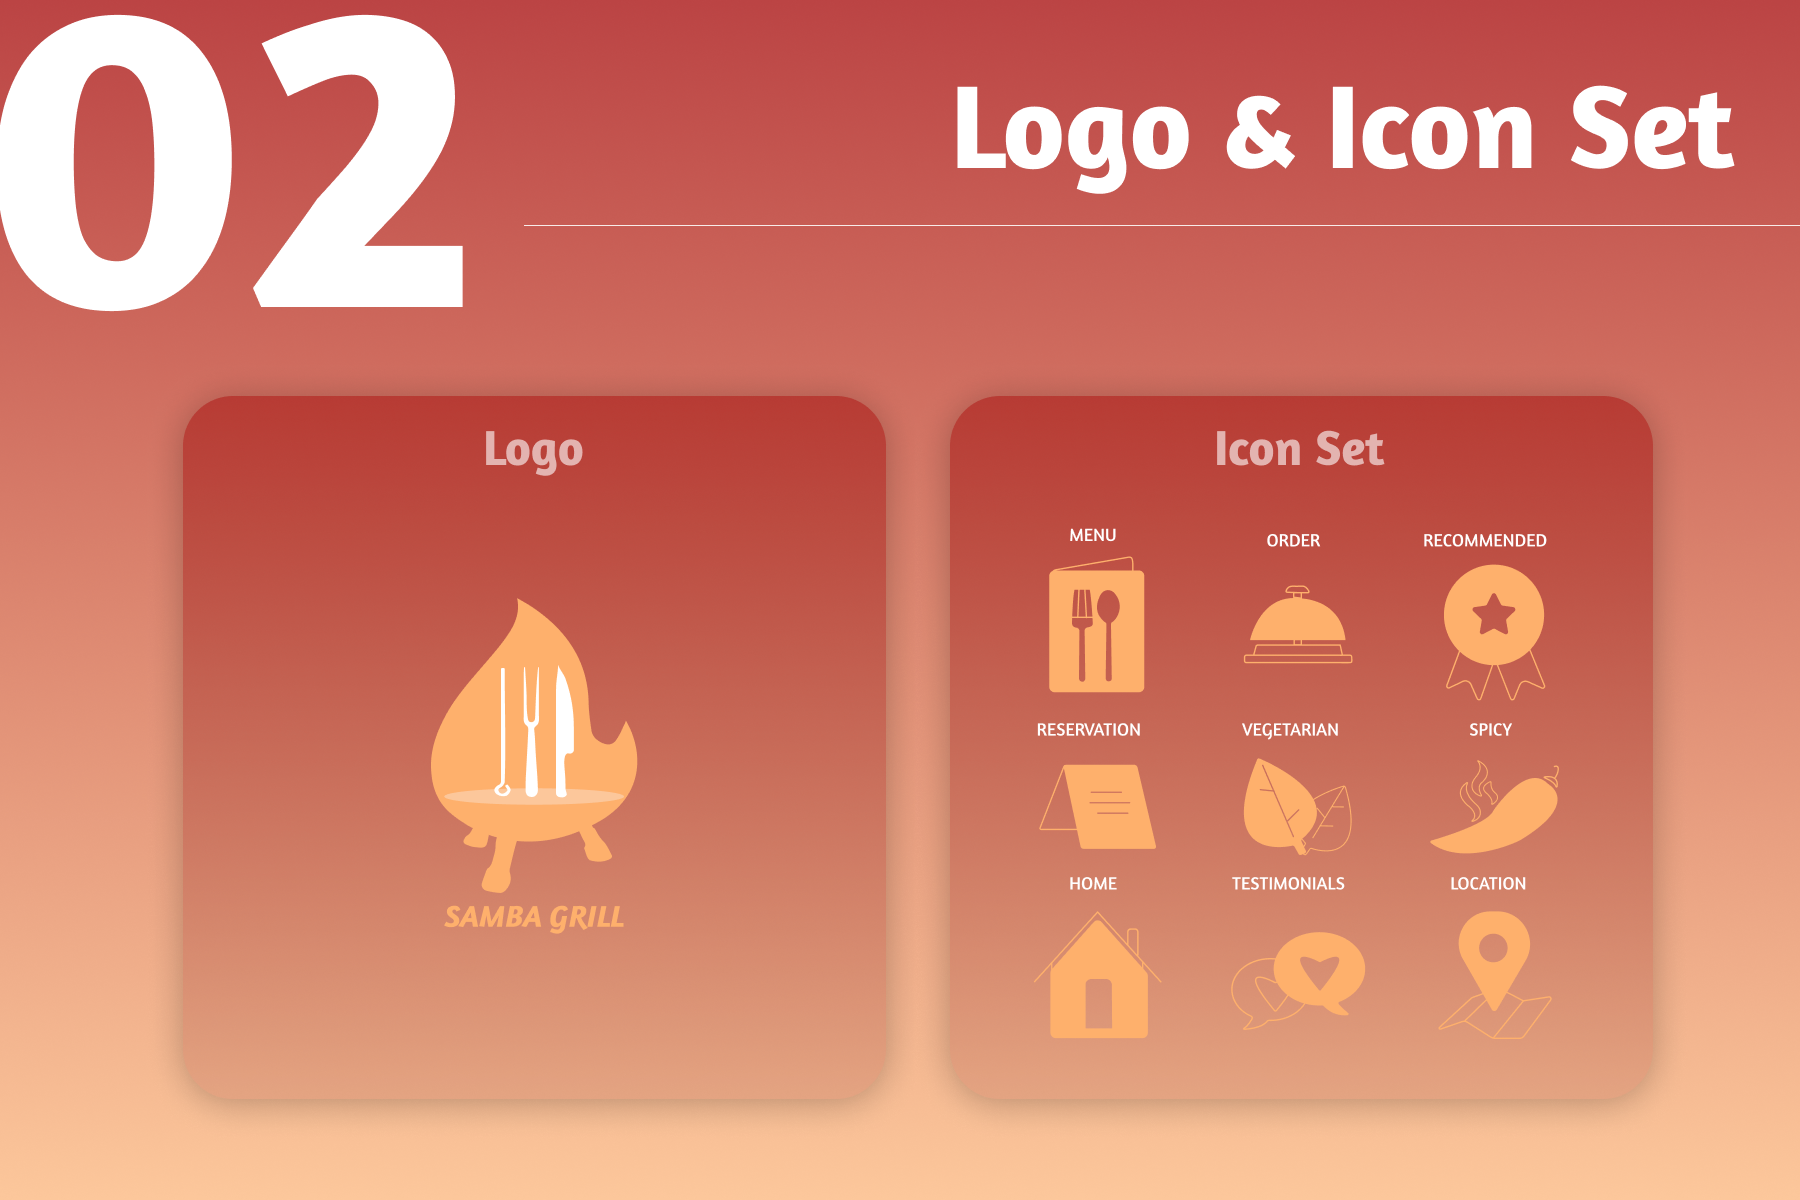 Samba logo and icon set